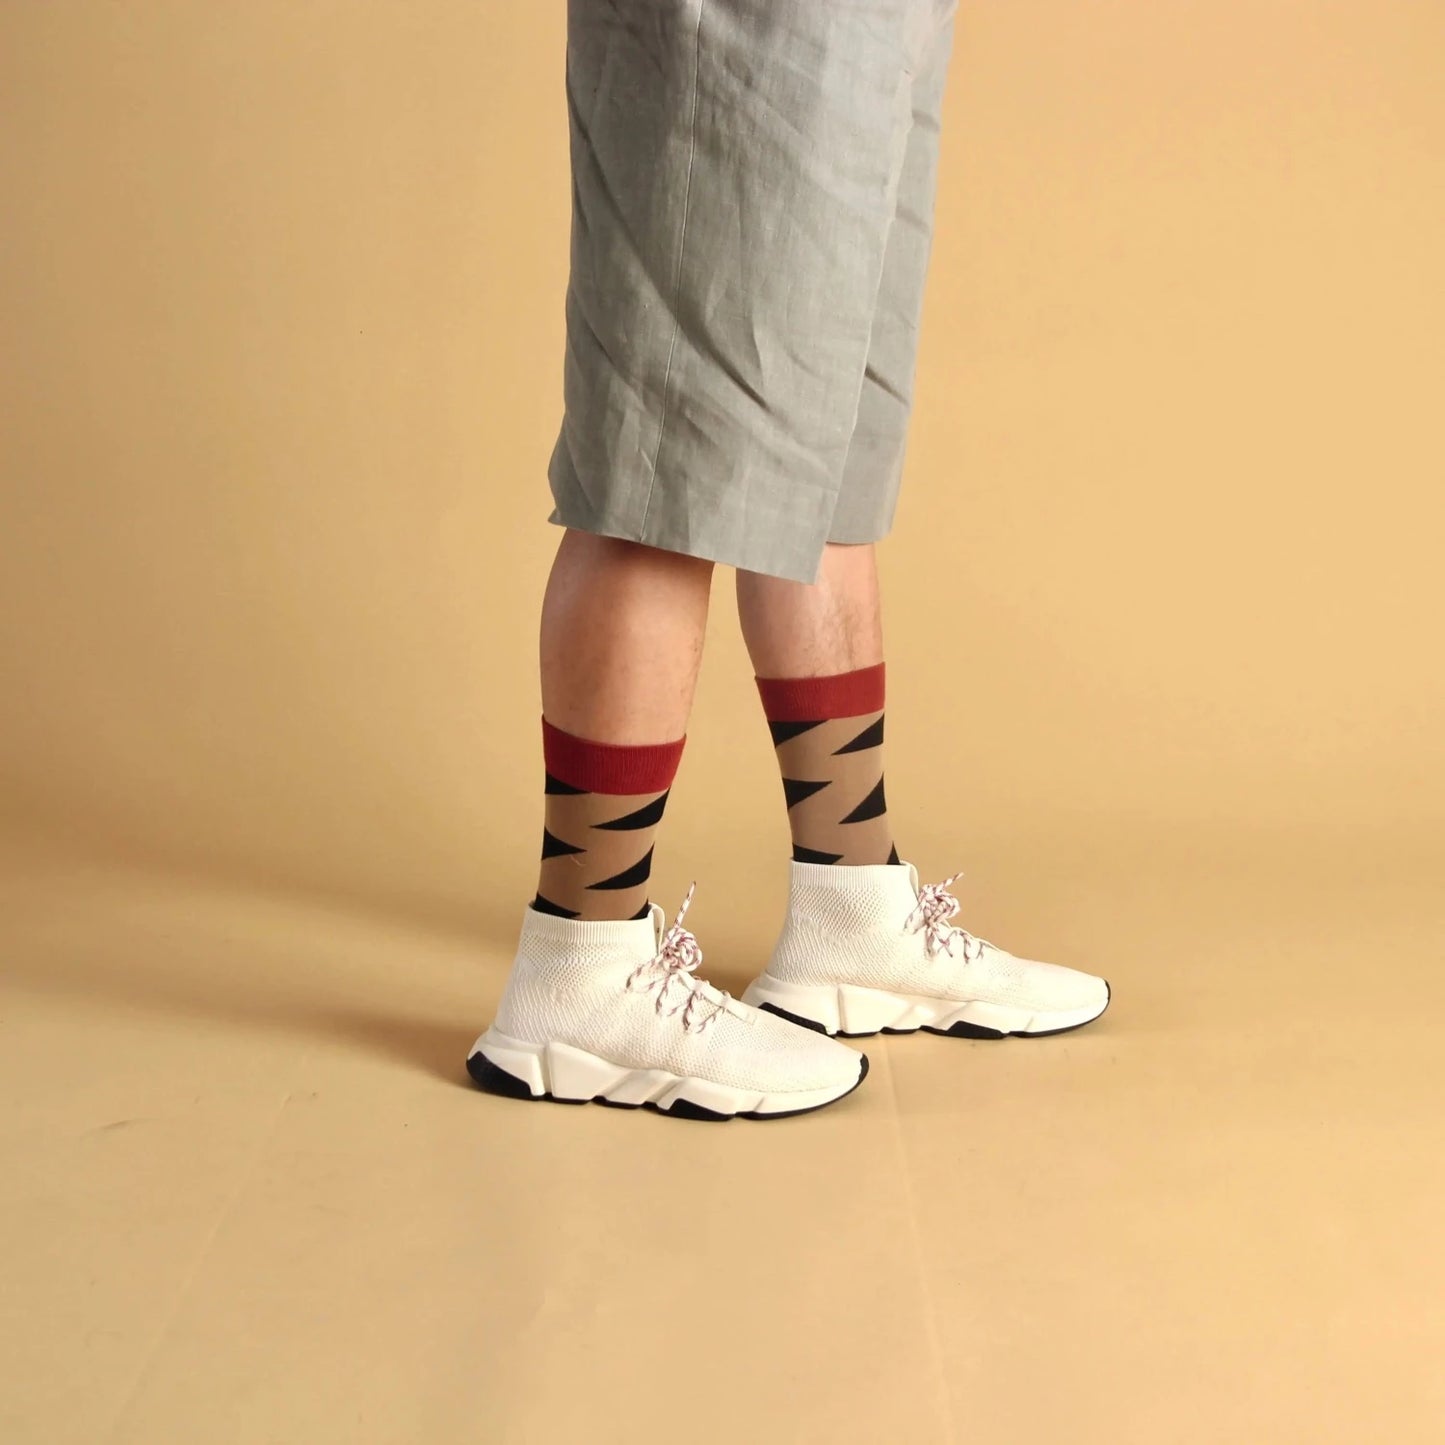 Wazi Unisex Designer Socks - Zigzag